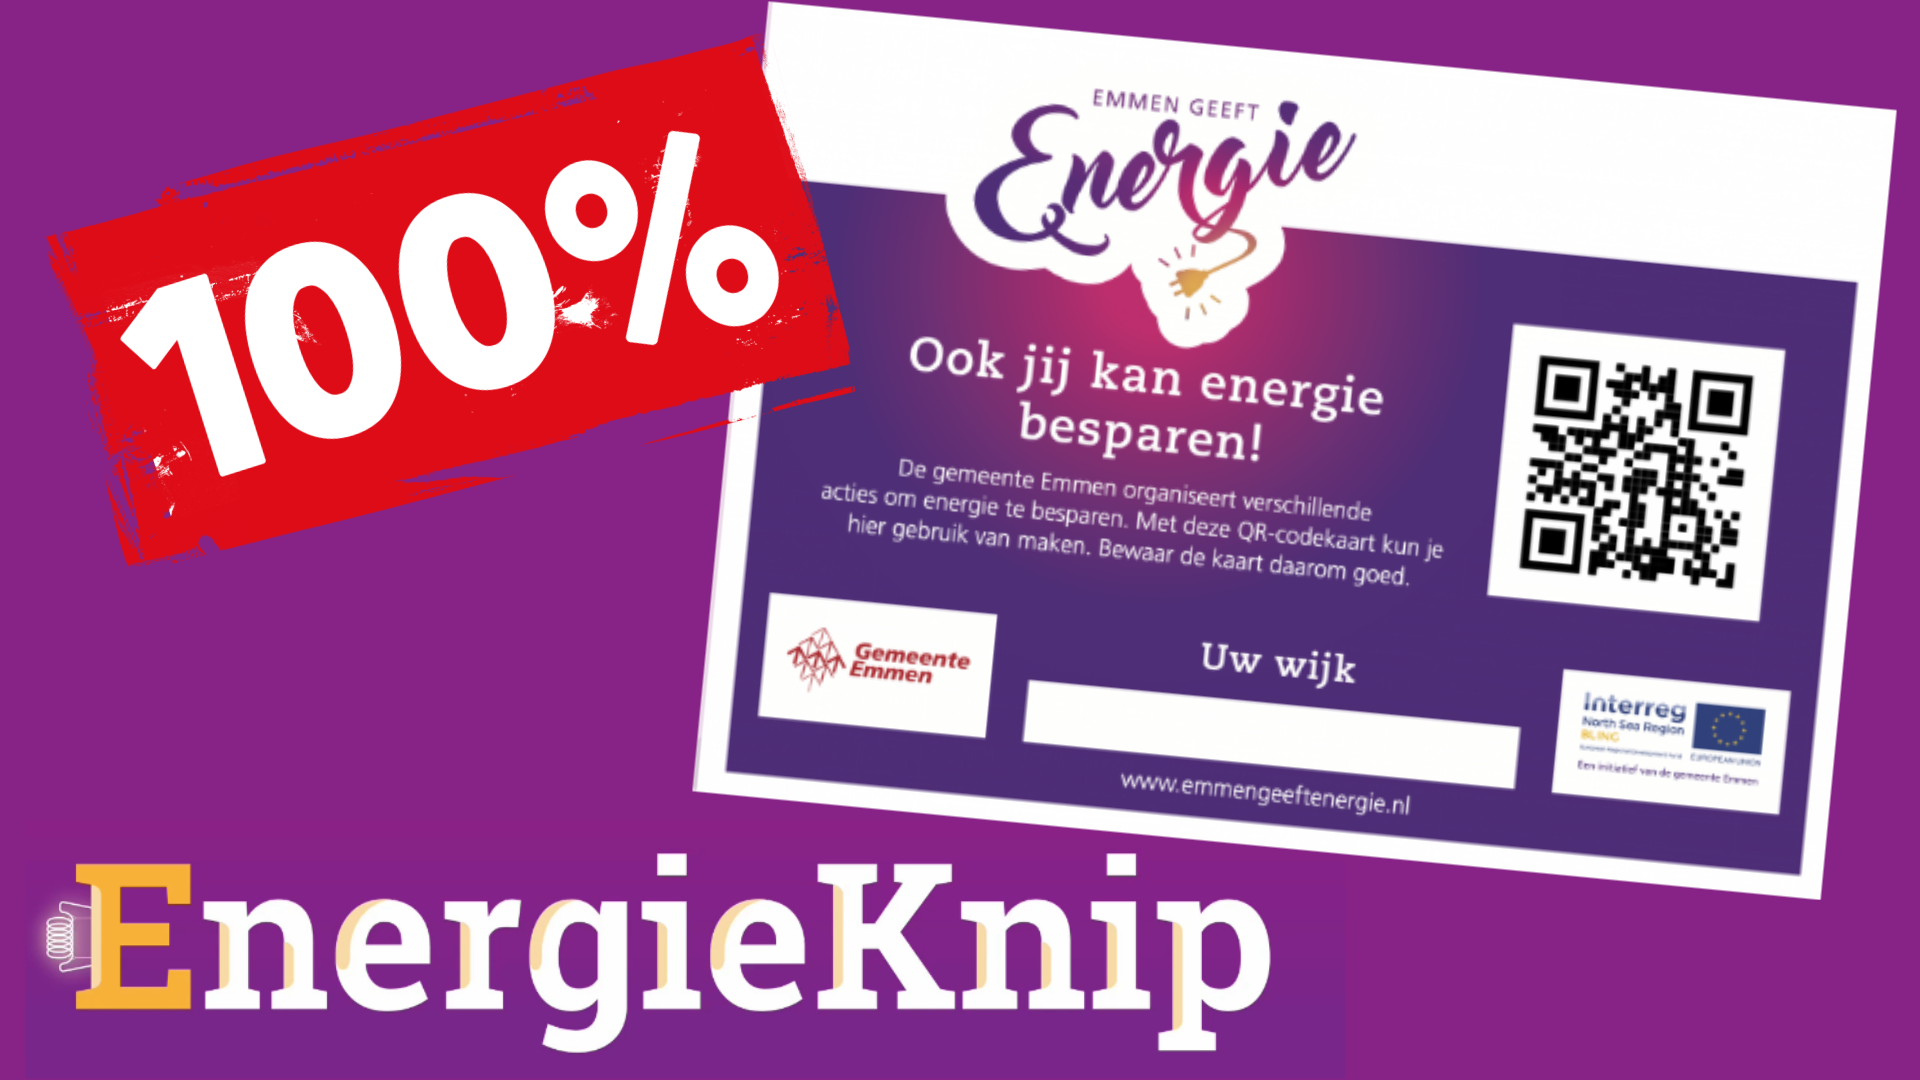 EnergieKnip in Emmen